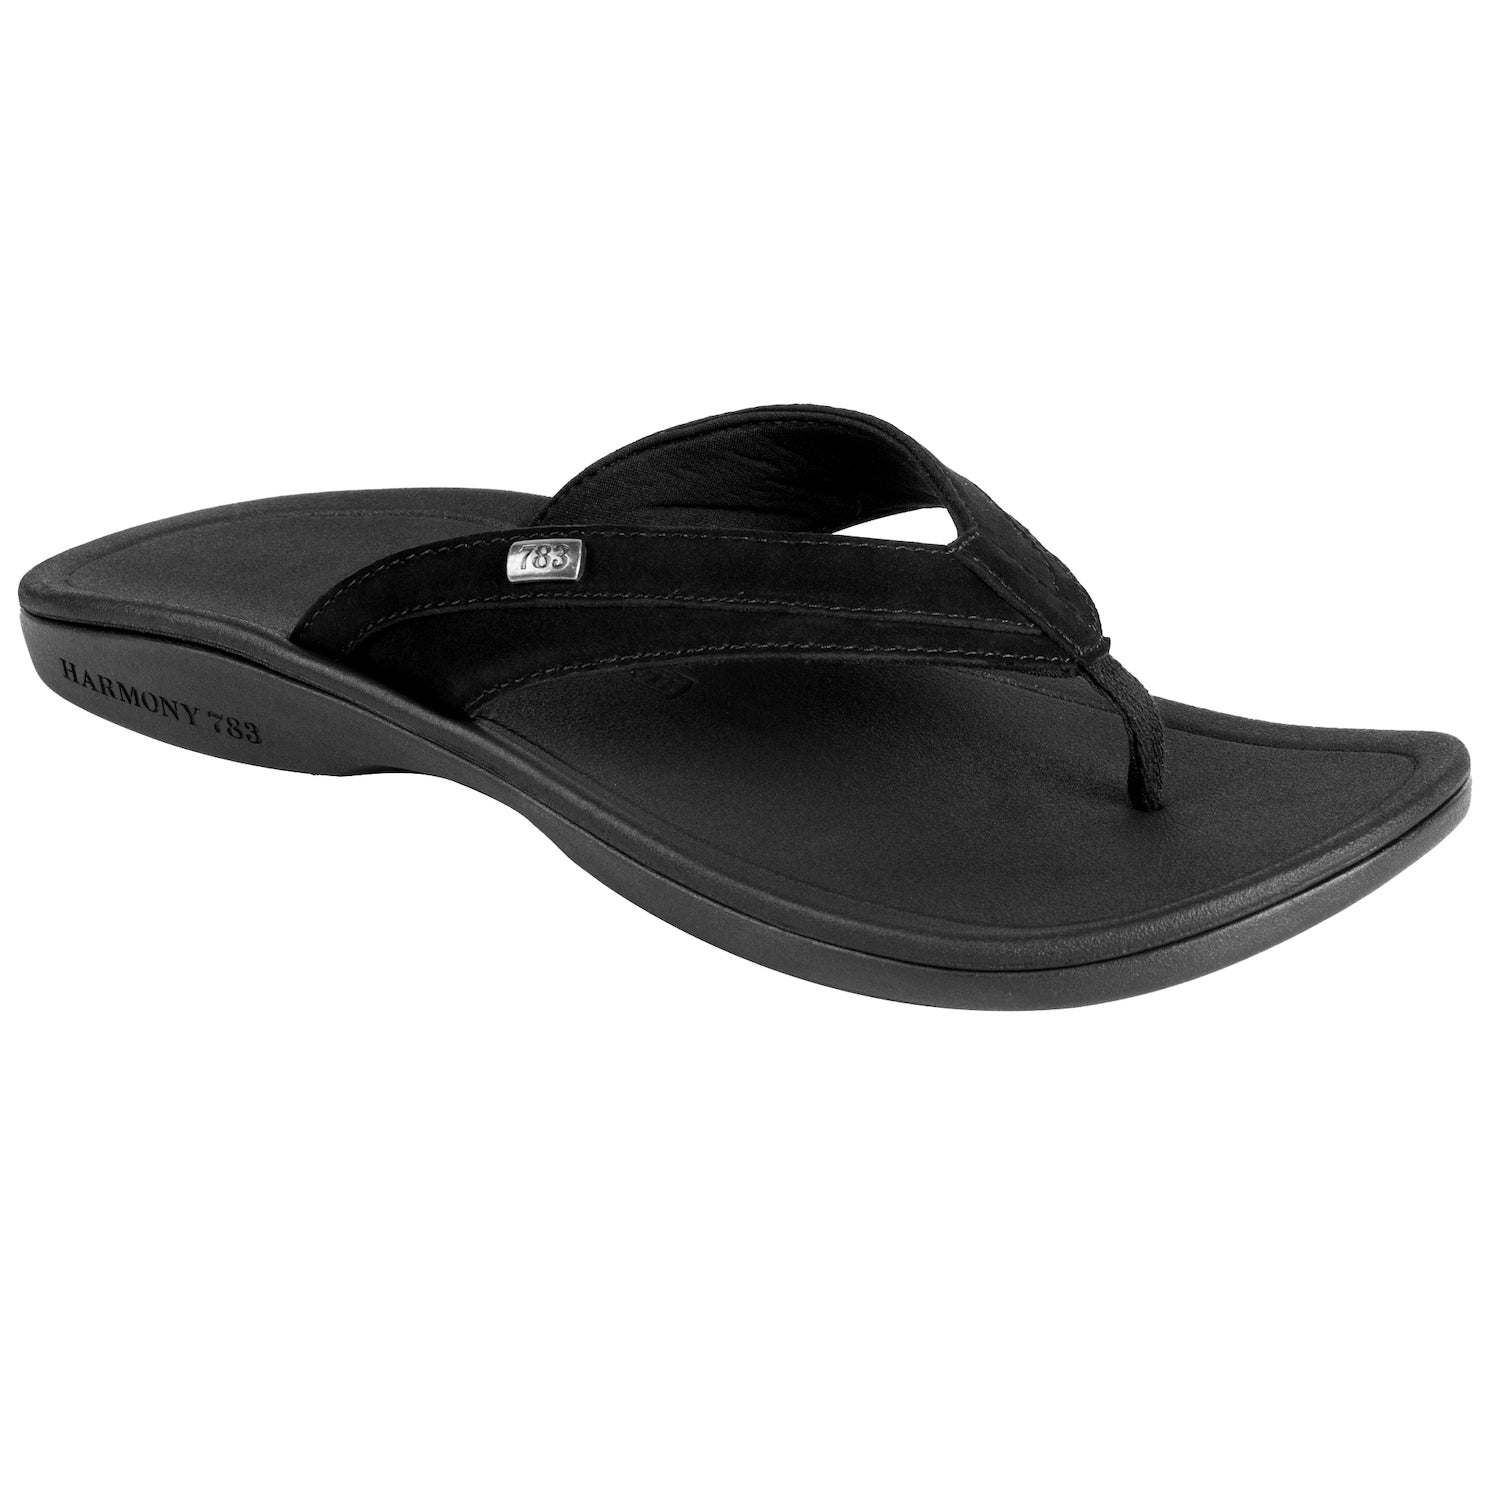 Men's Black Sandal | Comfy Grounding Flip Flops by Harmony 783